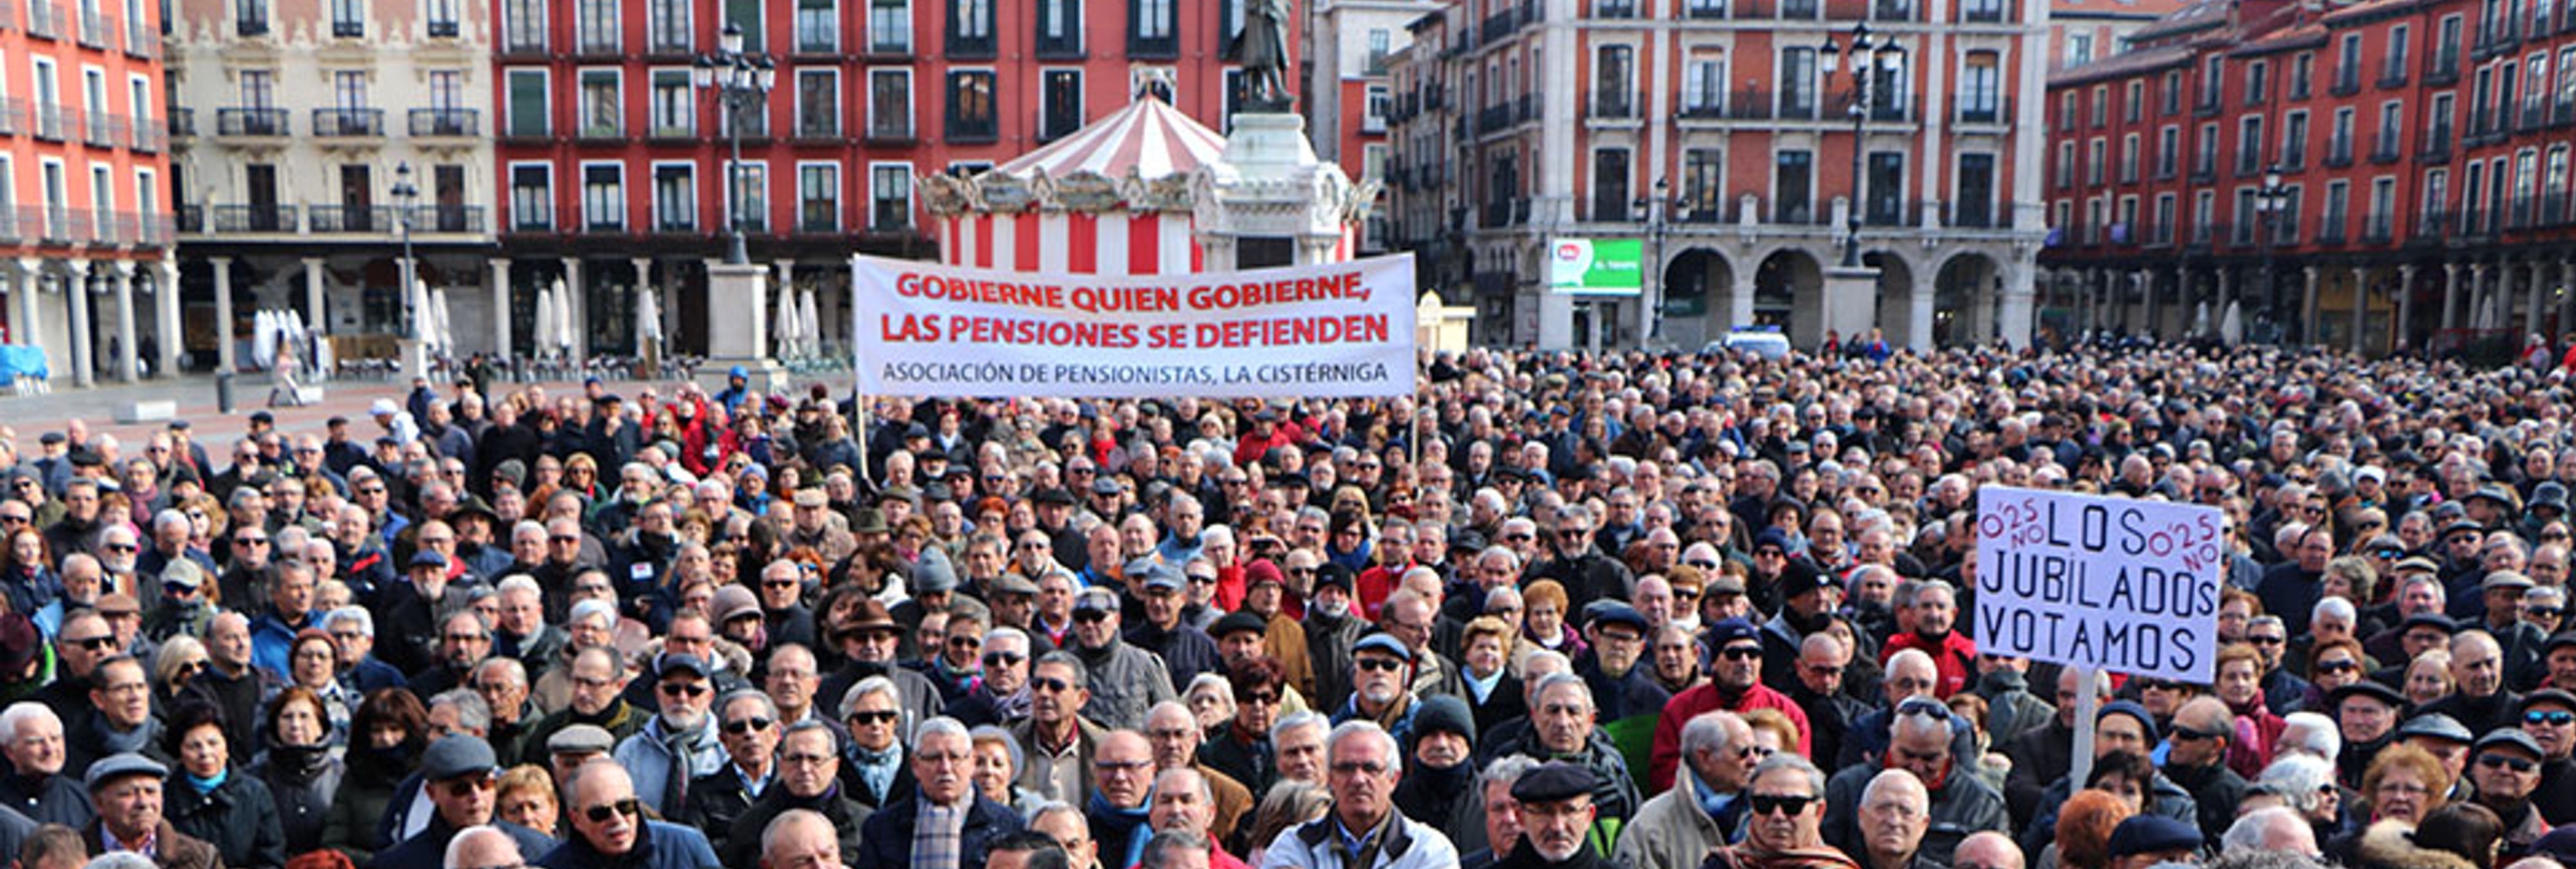 El gobernador del Banco de España que cobra 186.000 euros: "los jubilados no pueden quejarse"